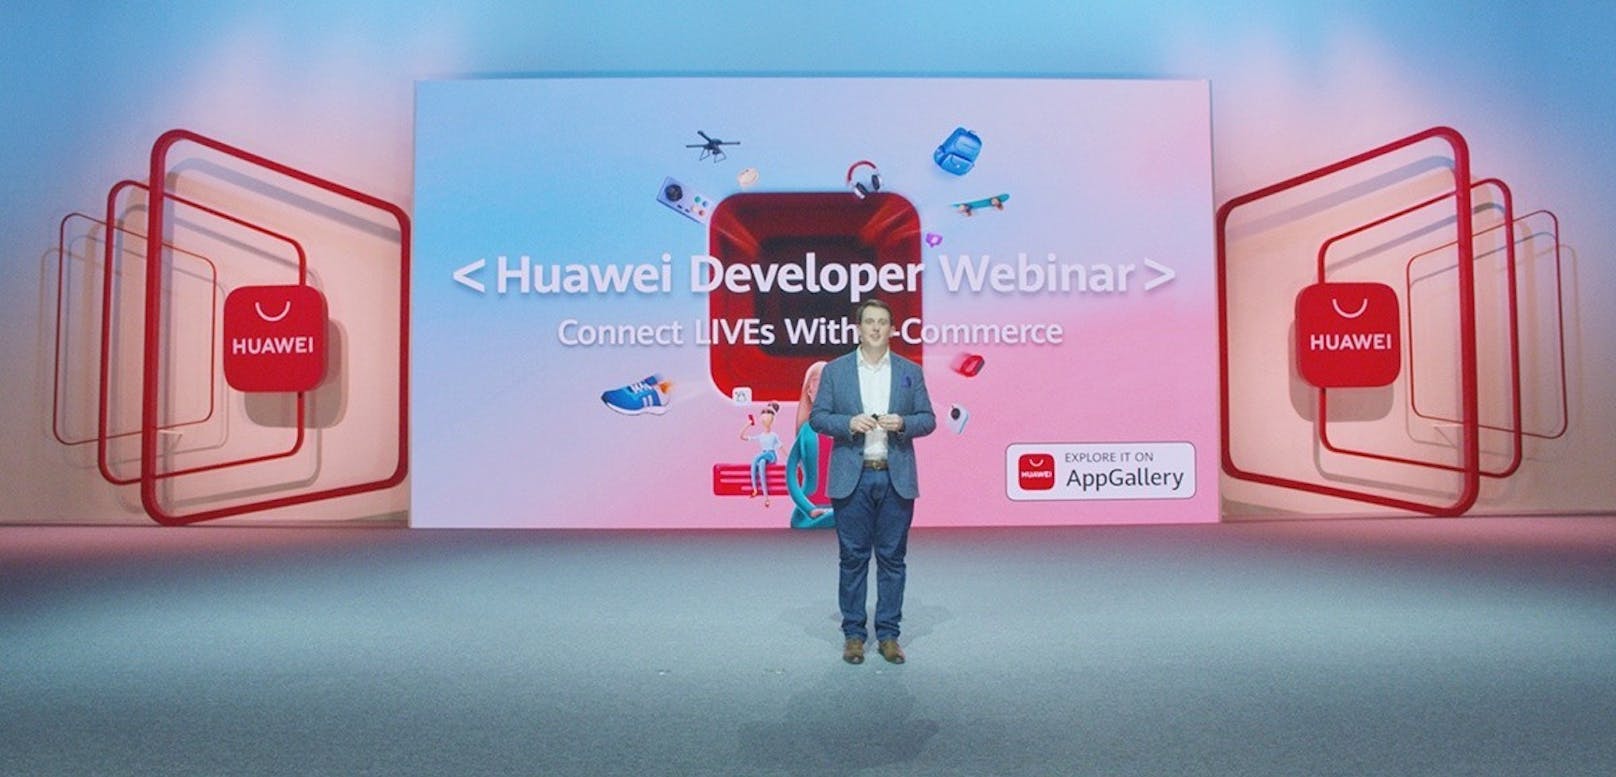 Verbesserte Technologien für Huawei Mobile Services bieten intelligenteres Live-Streaming-Erlebnis auf E-Commerce-Plattformen.